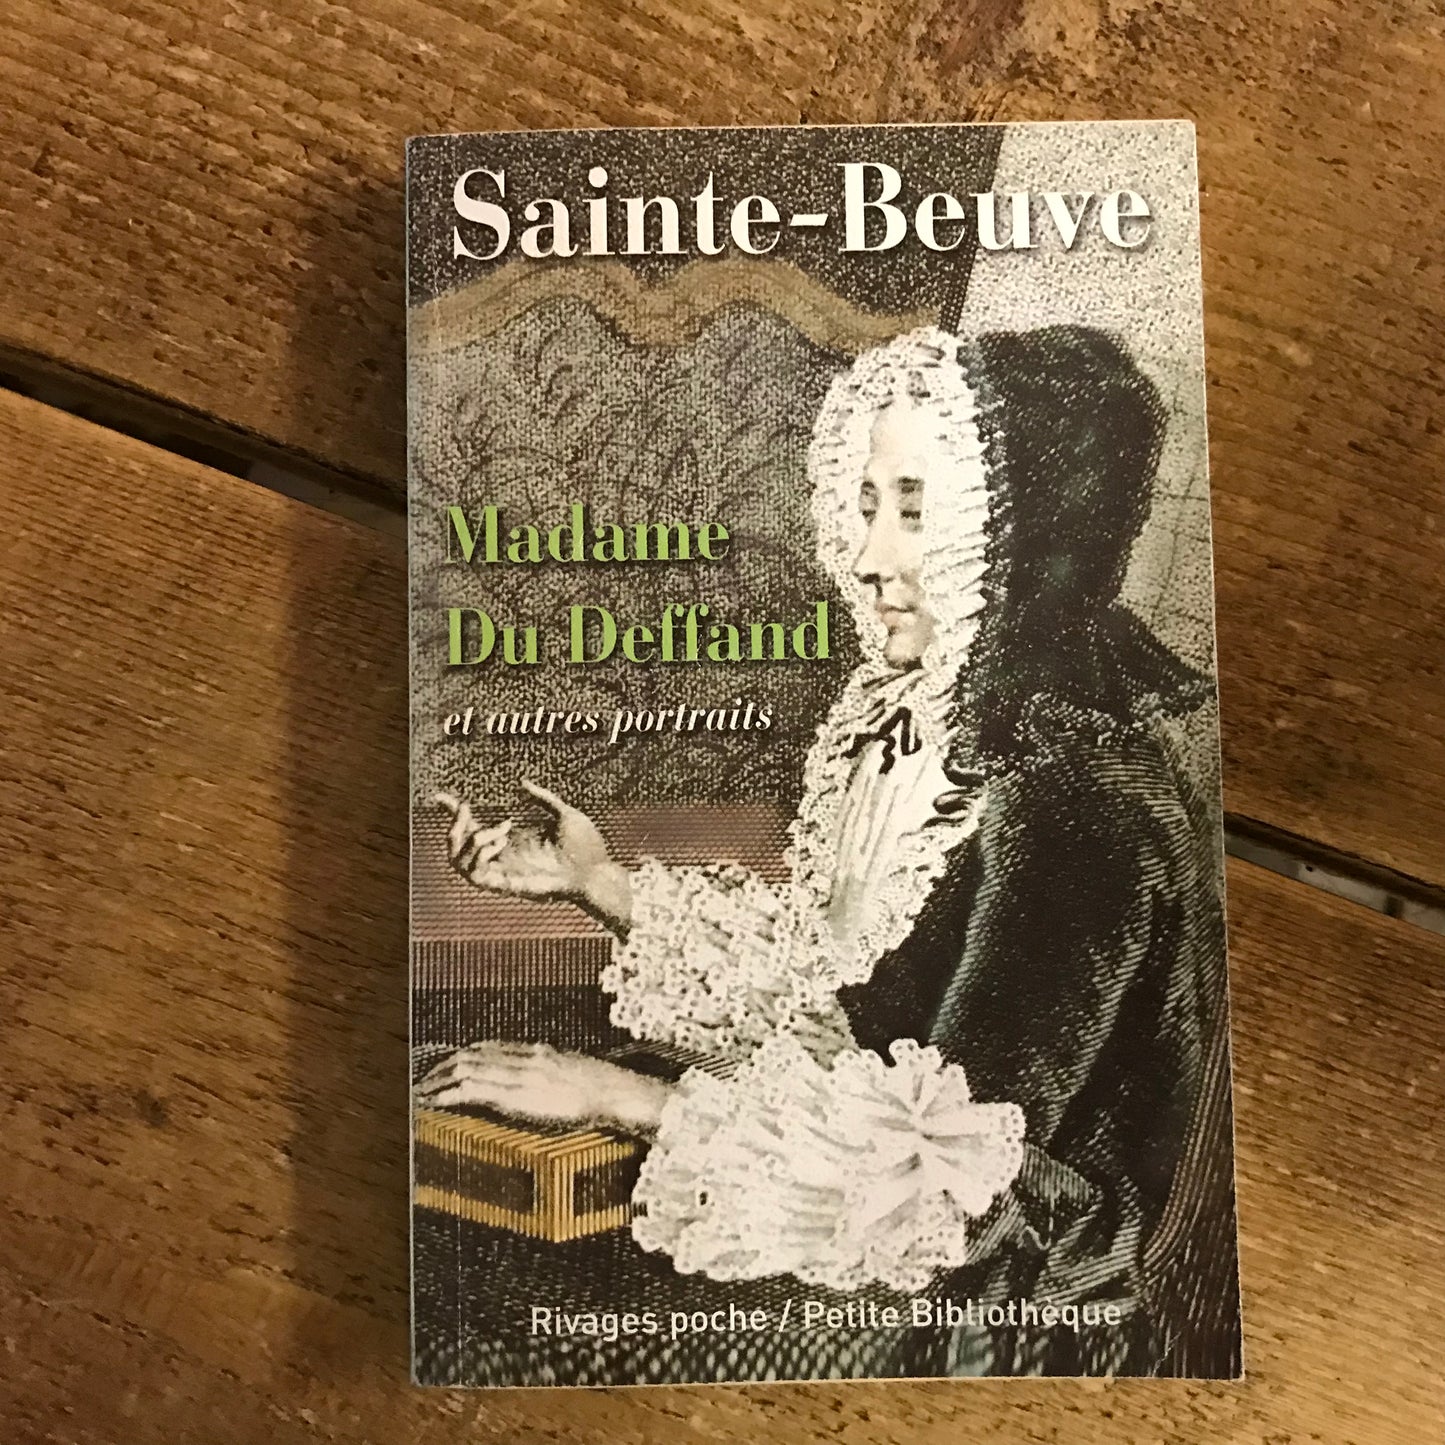 Sainte-Beuve - Madame du Deffand et autres portraits